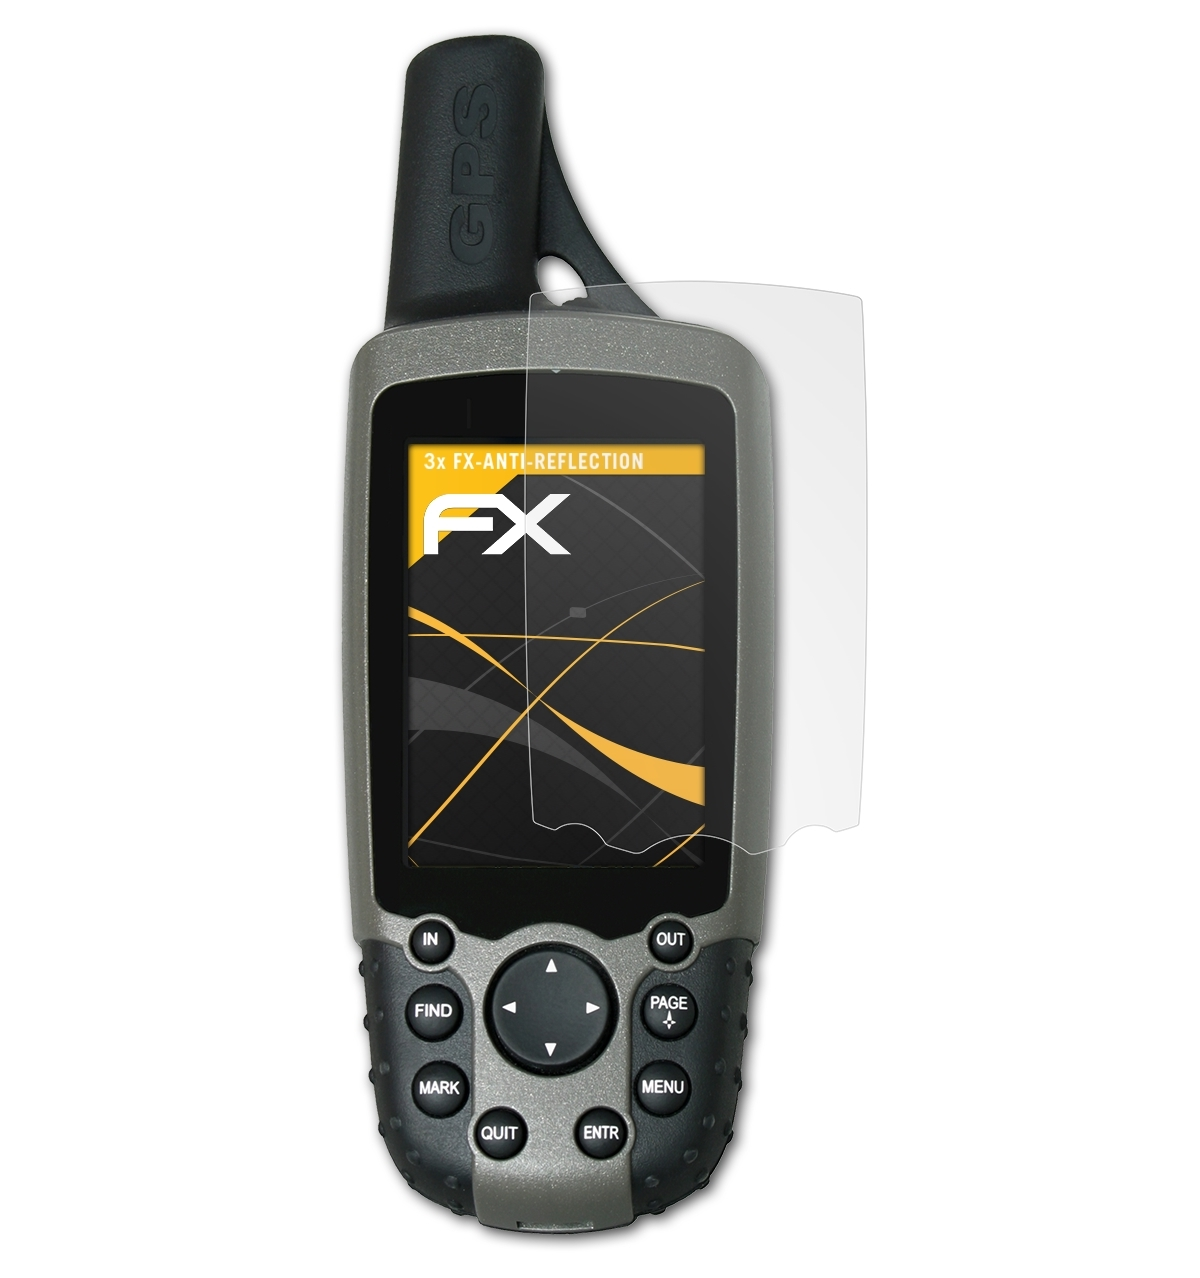 Displayschutz(für ATFOLIX Garmin 3x GPSMap 60C) FX-Antireflex